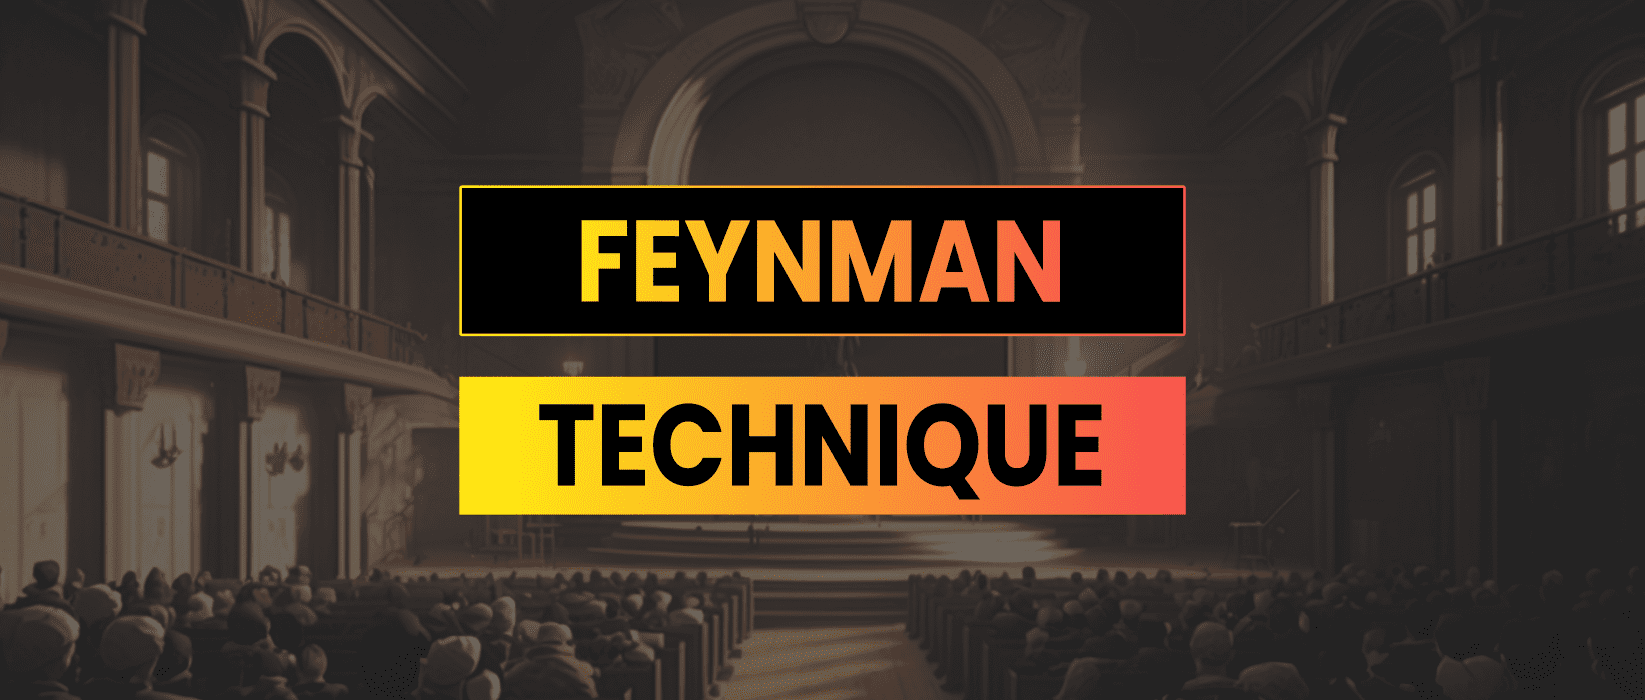 Feynman Technique